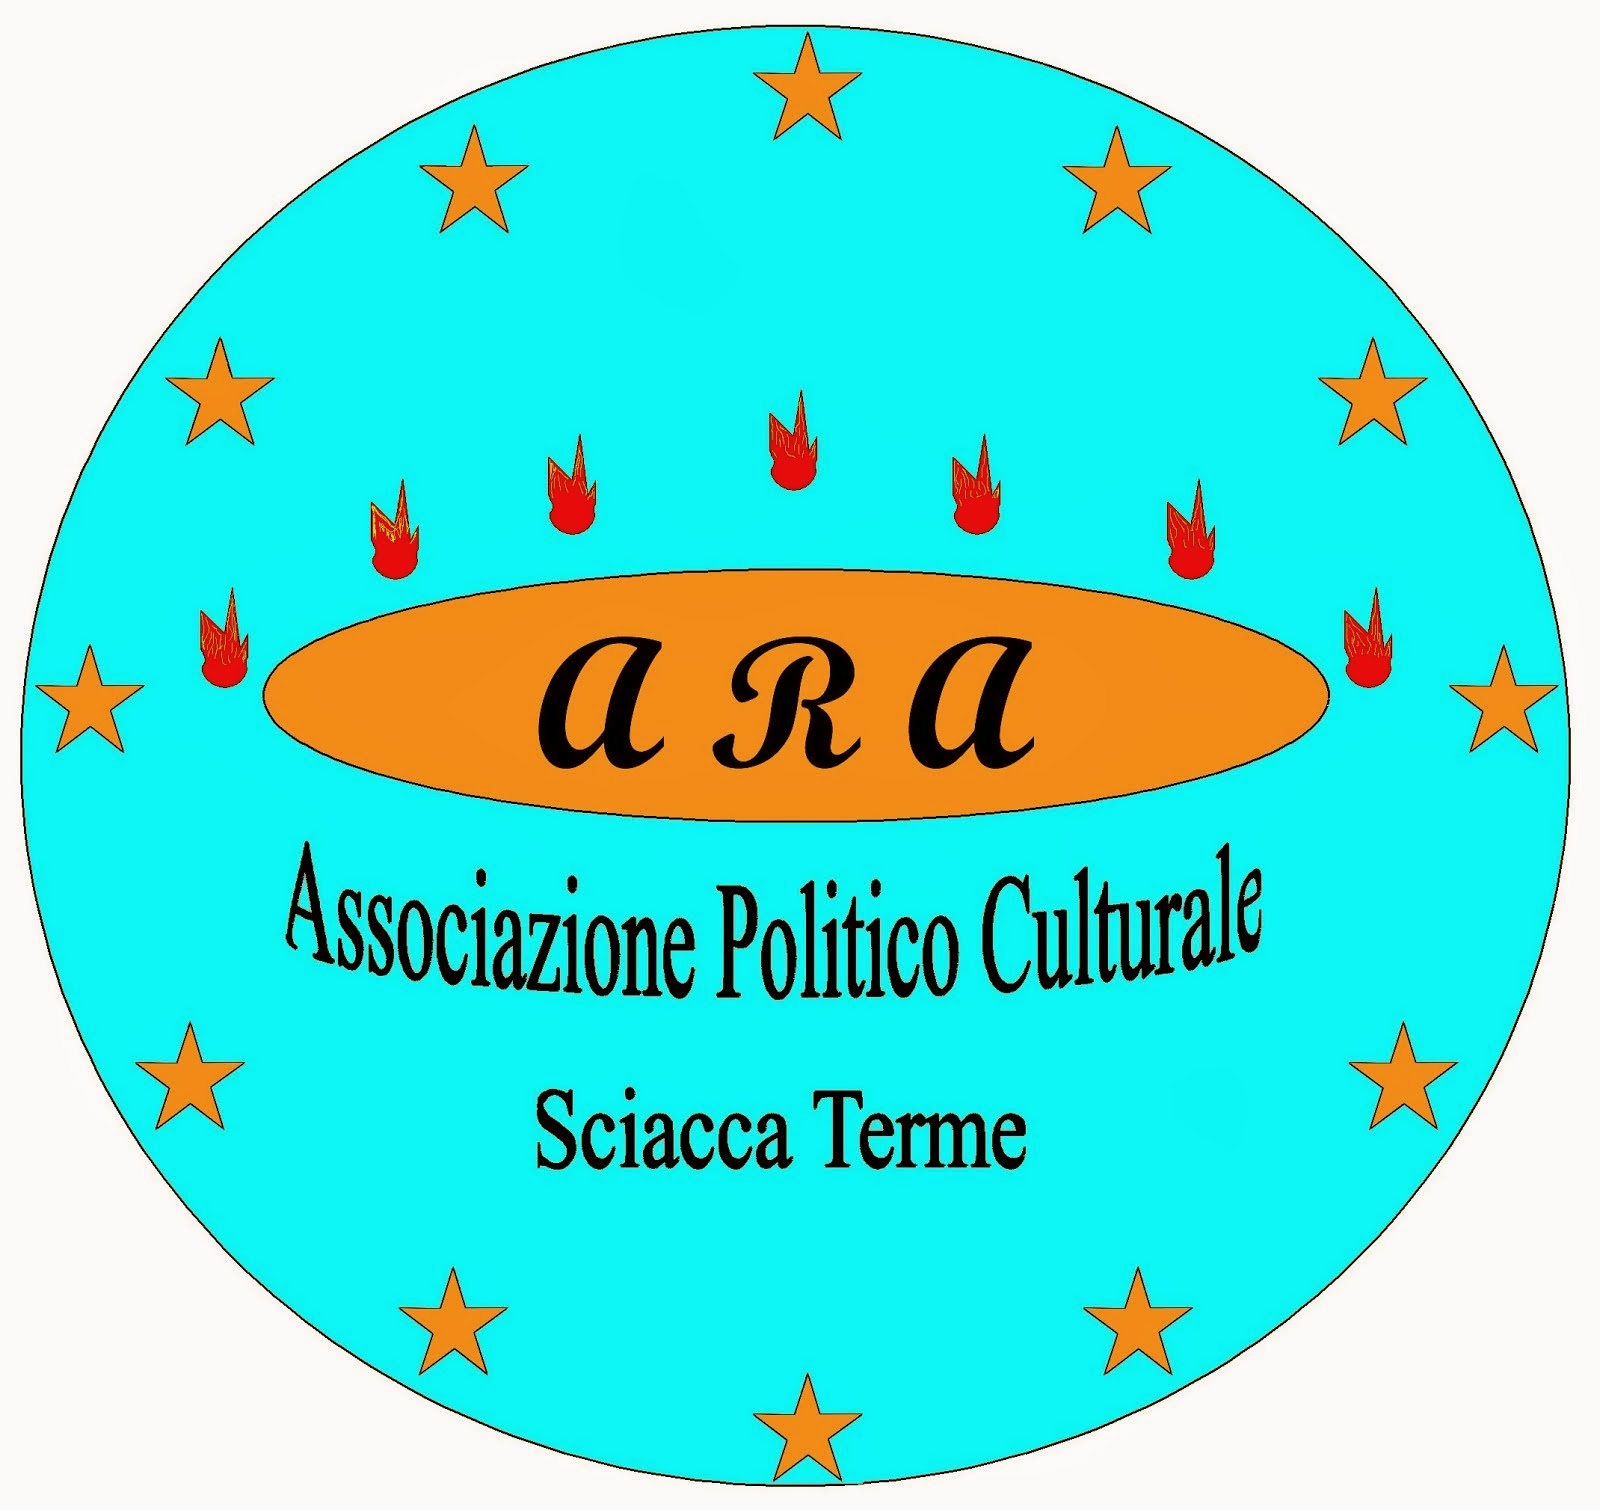 Associazione Politico Culturale "ARA"